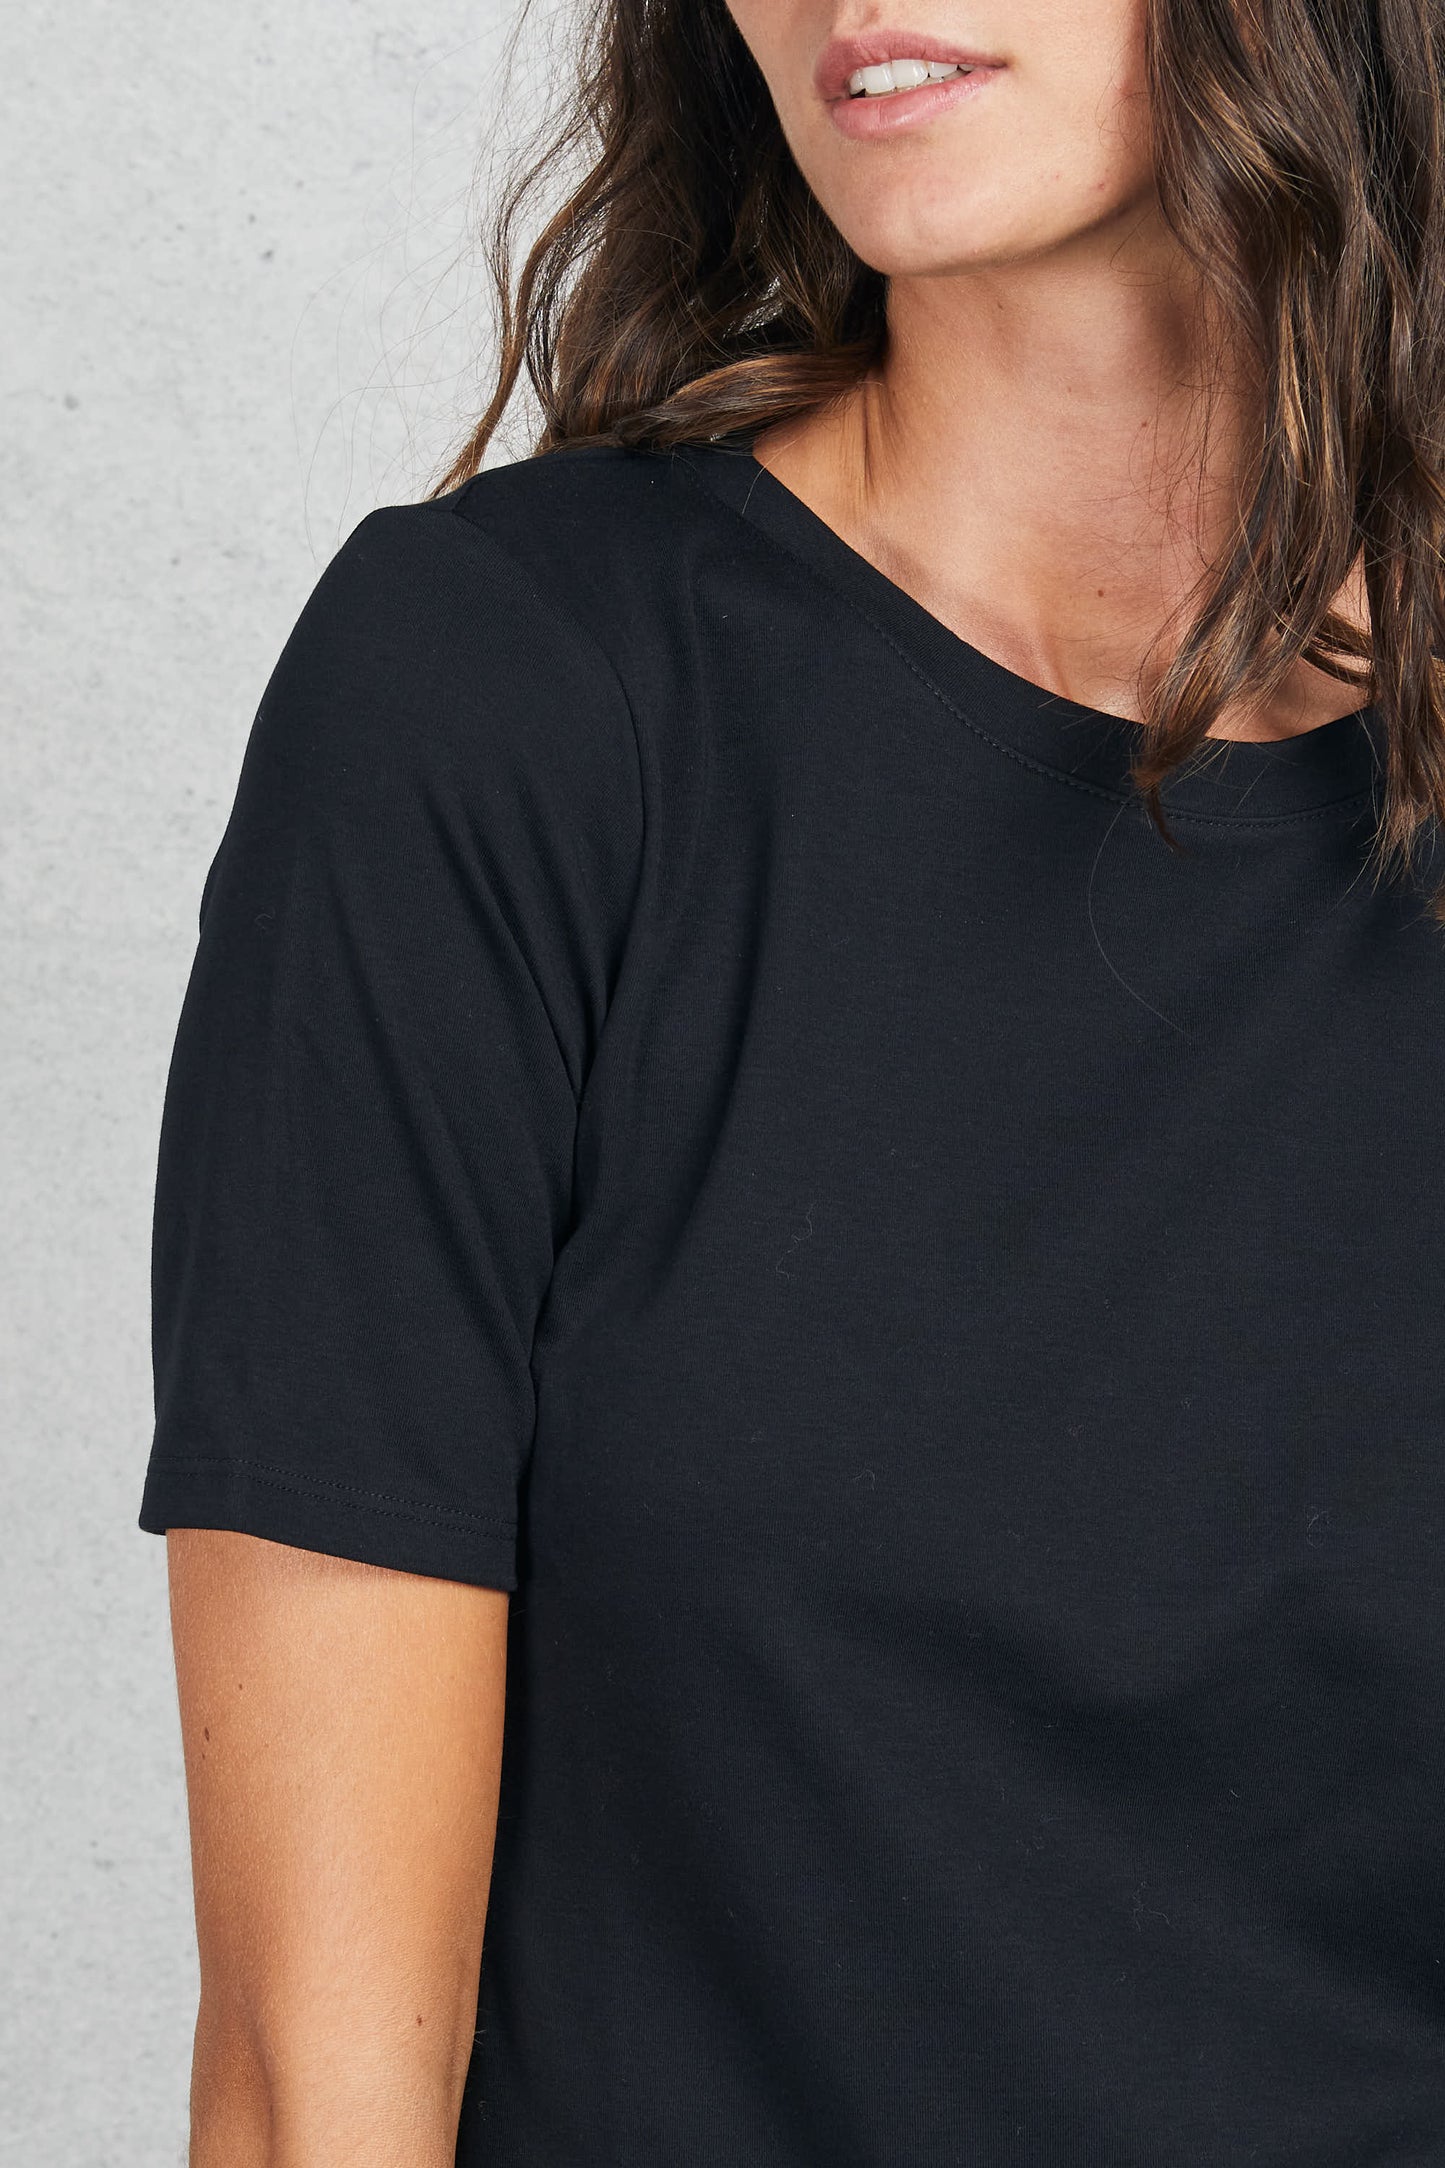  Purotatto Round Collar T-shirt Sleevs Black Women Nero Donna - 5